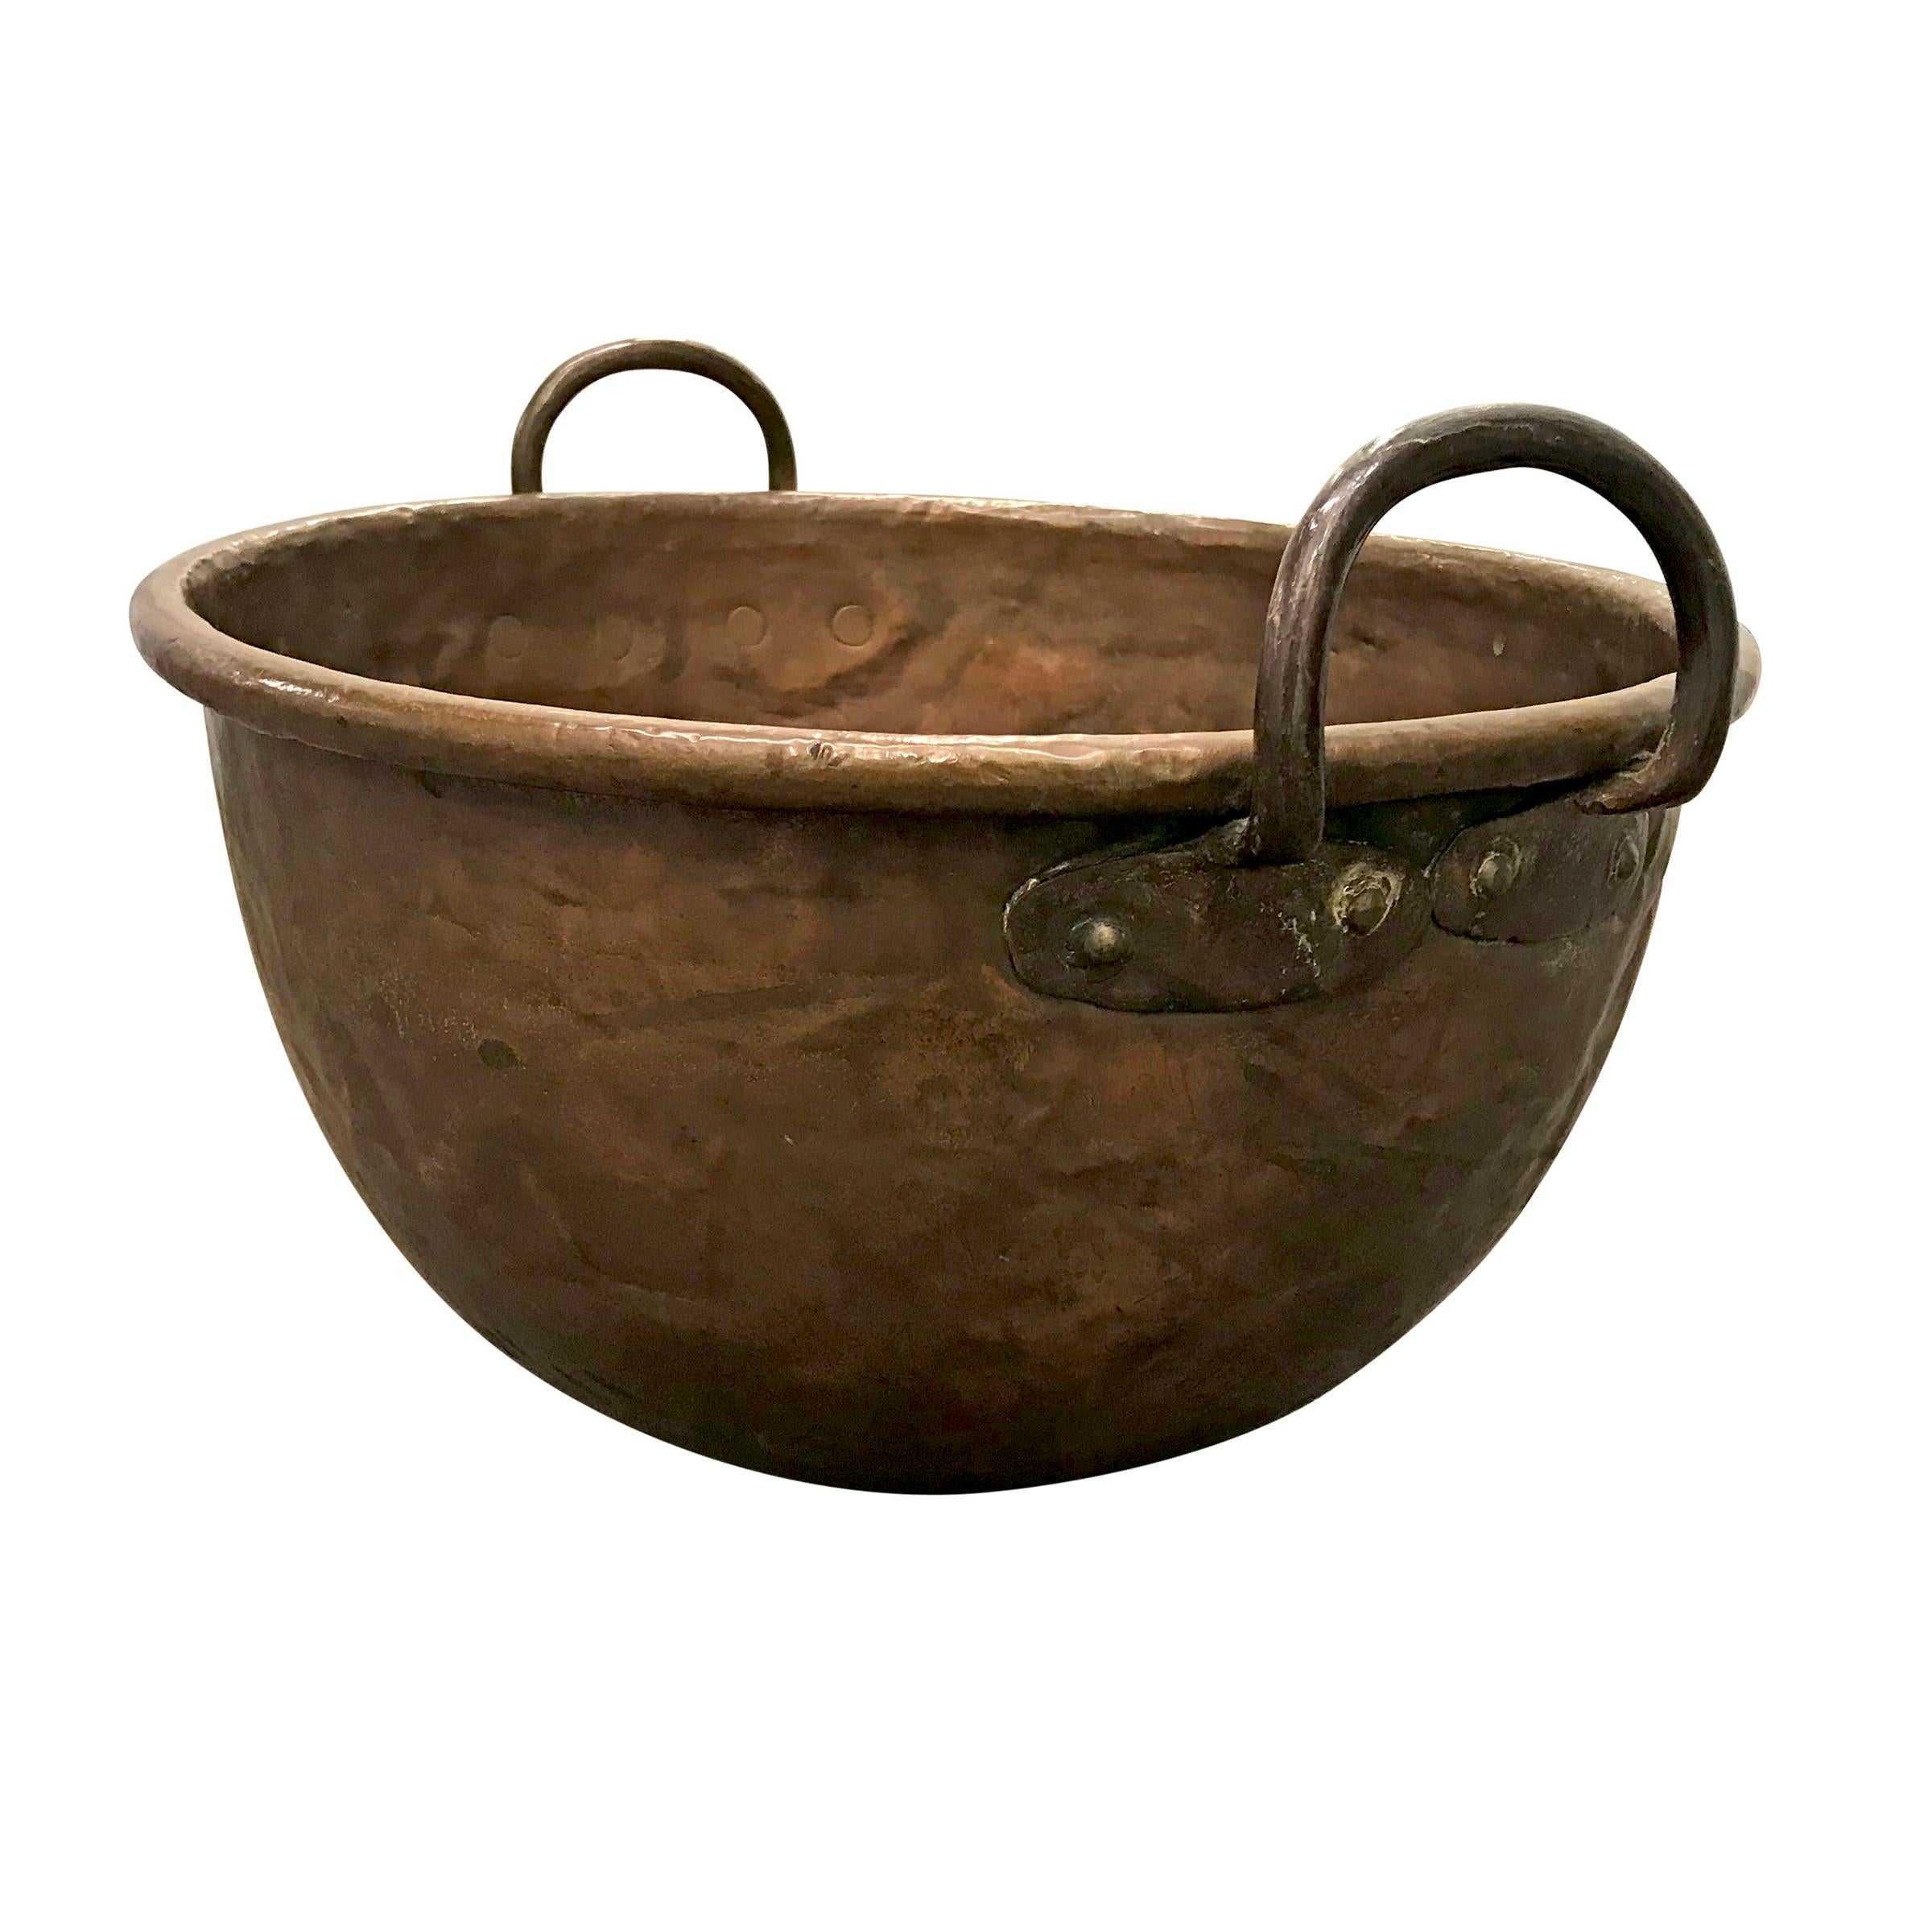 Un pot de confectionneur en cuivre français du XVIIIe siècle avec des poignées merveilleusement forgées, un épais bord roulé et un patch circulaire en bas avec les rivets martelés à la main les plus élaborés. Nous pensons que c'est parfait tel quel,